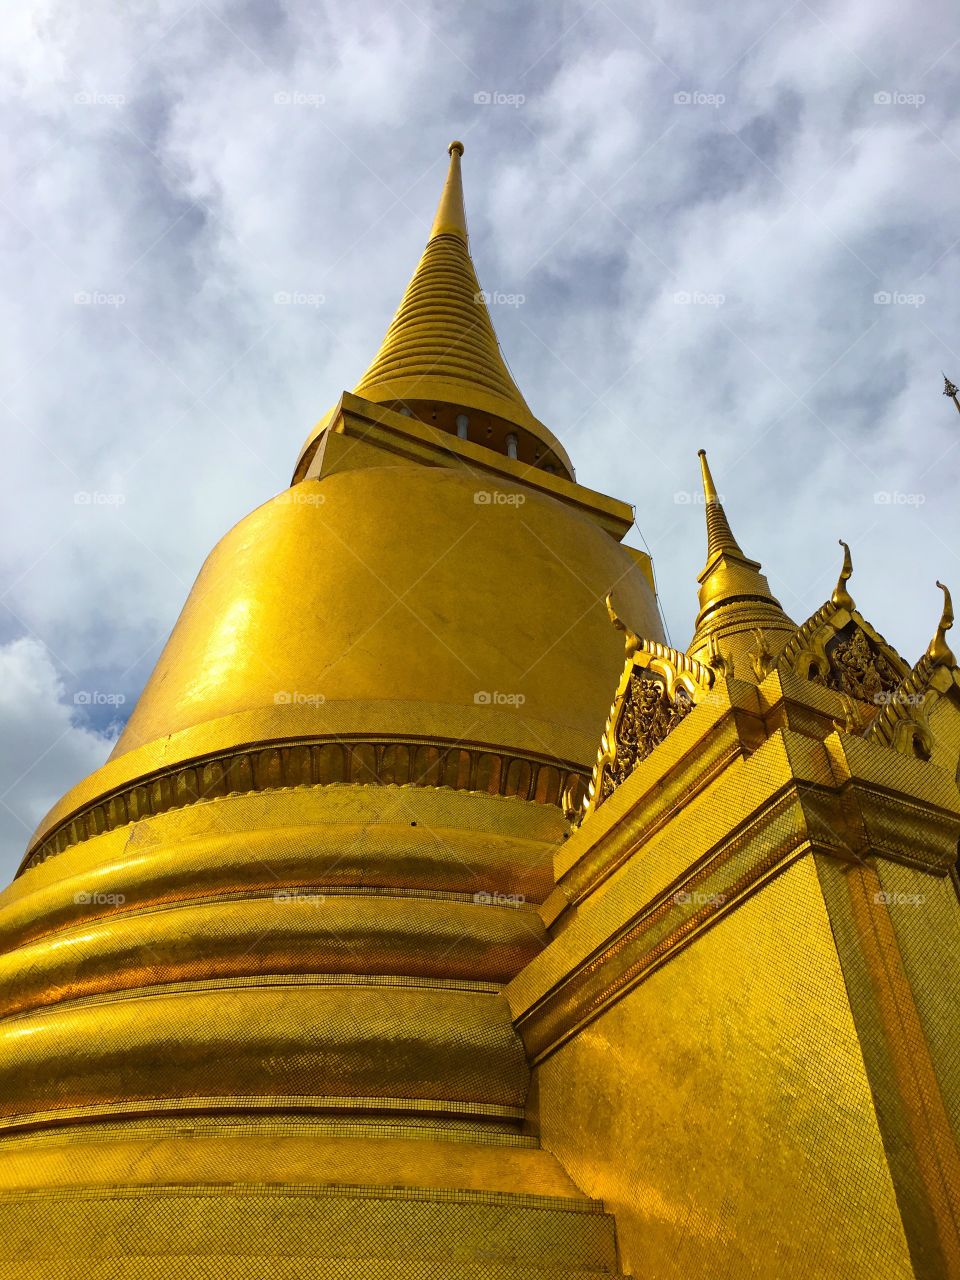 Grand Palace / Bangkok Thailand 10